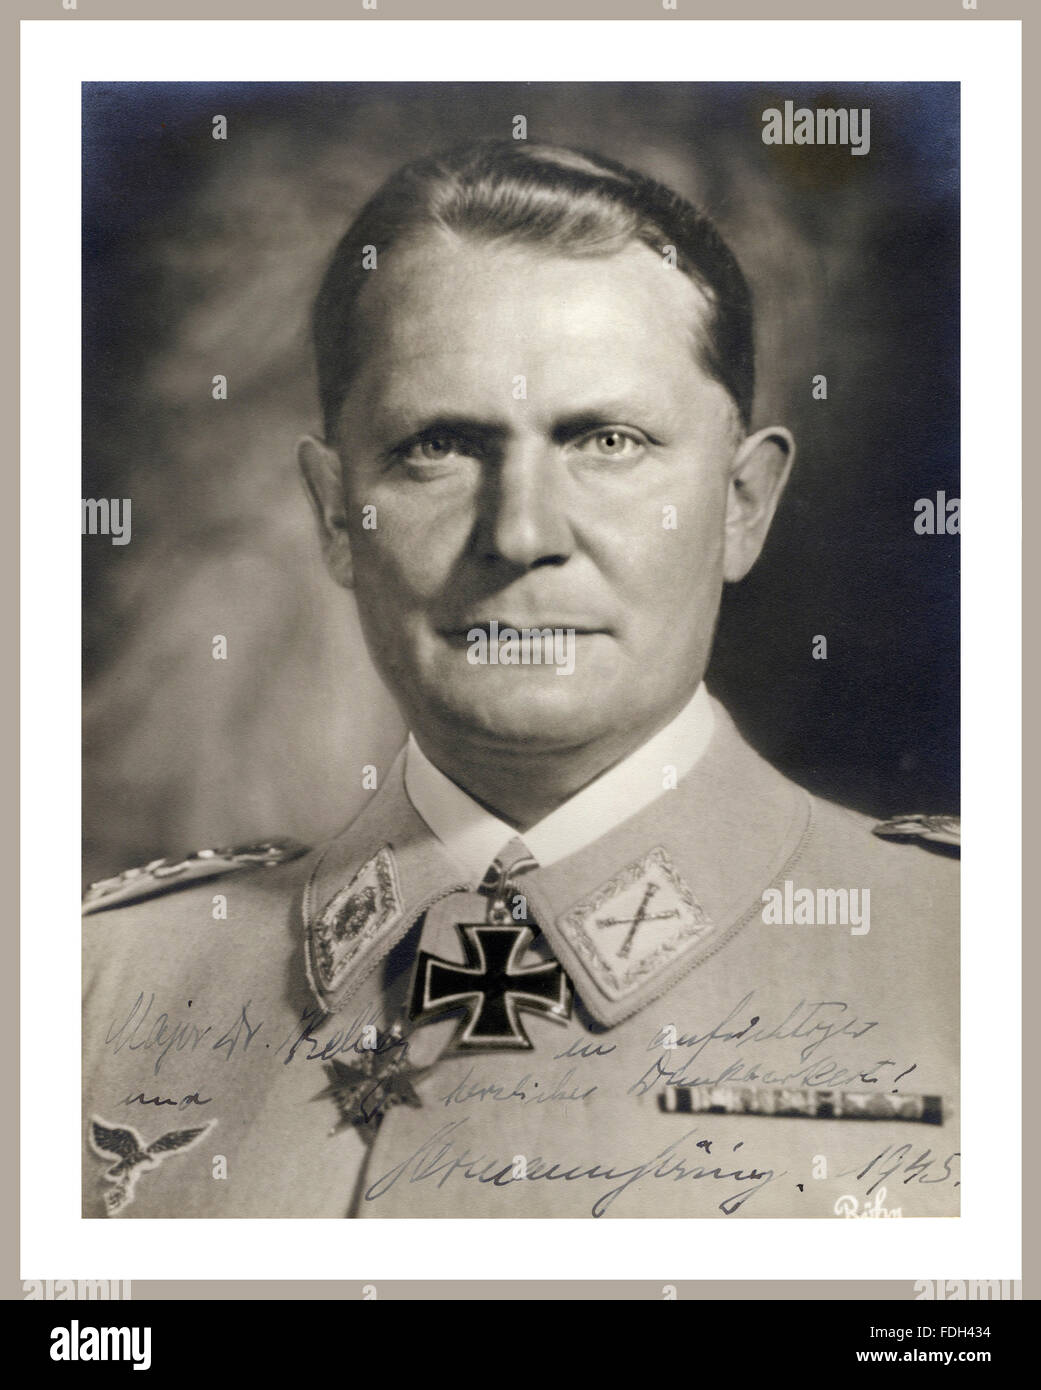 ... Nazi Reichsmarschall Hermann Wilhelm Goering in uniform wearing The Iron